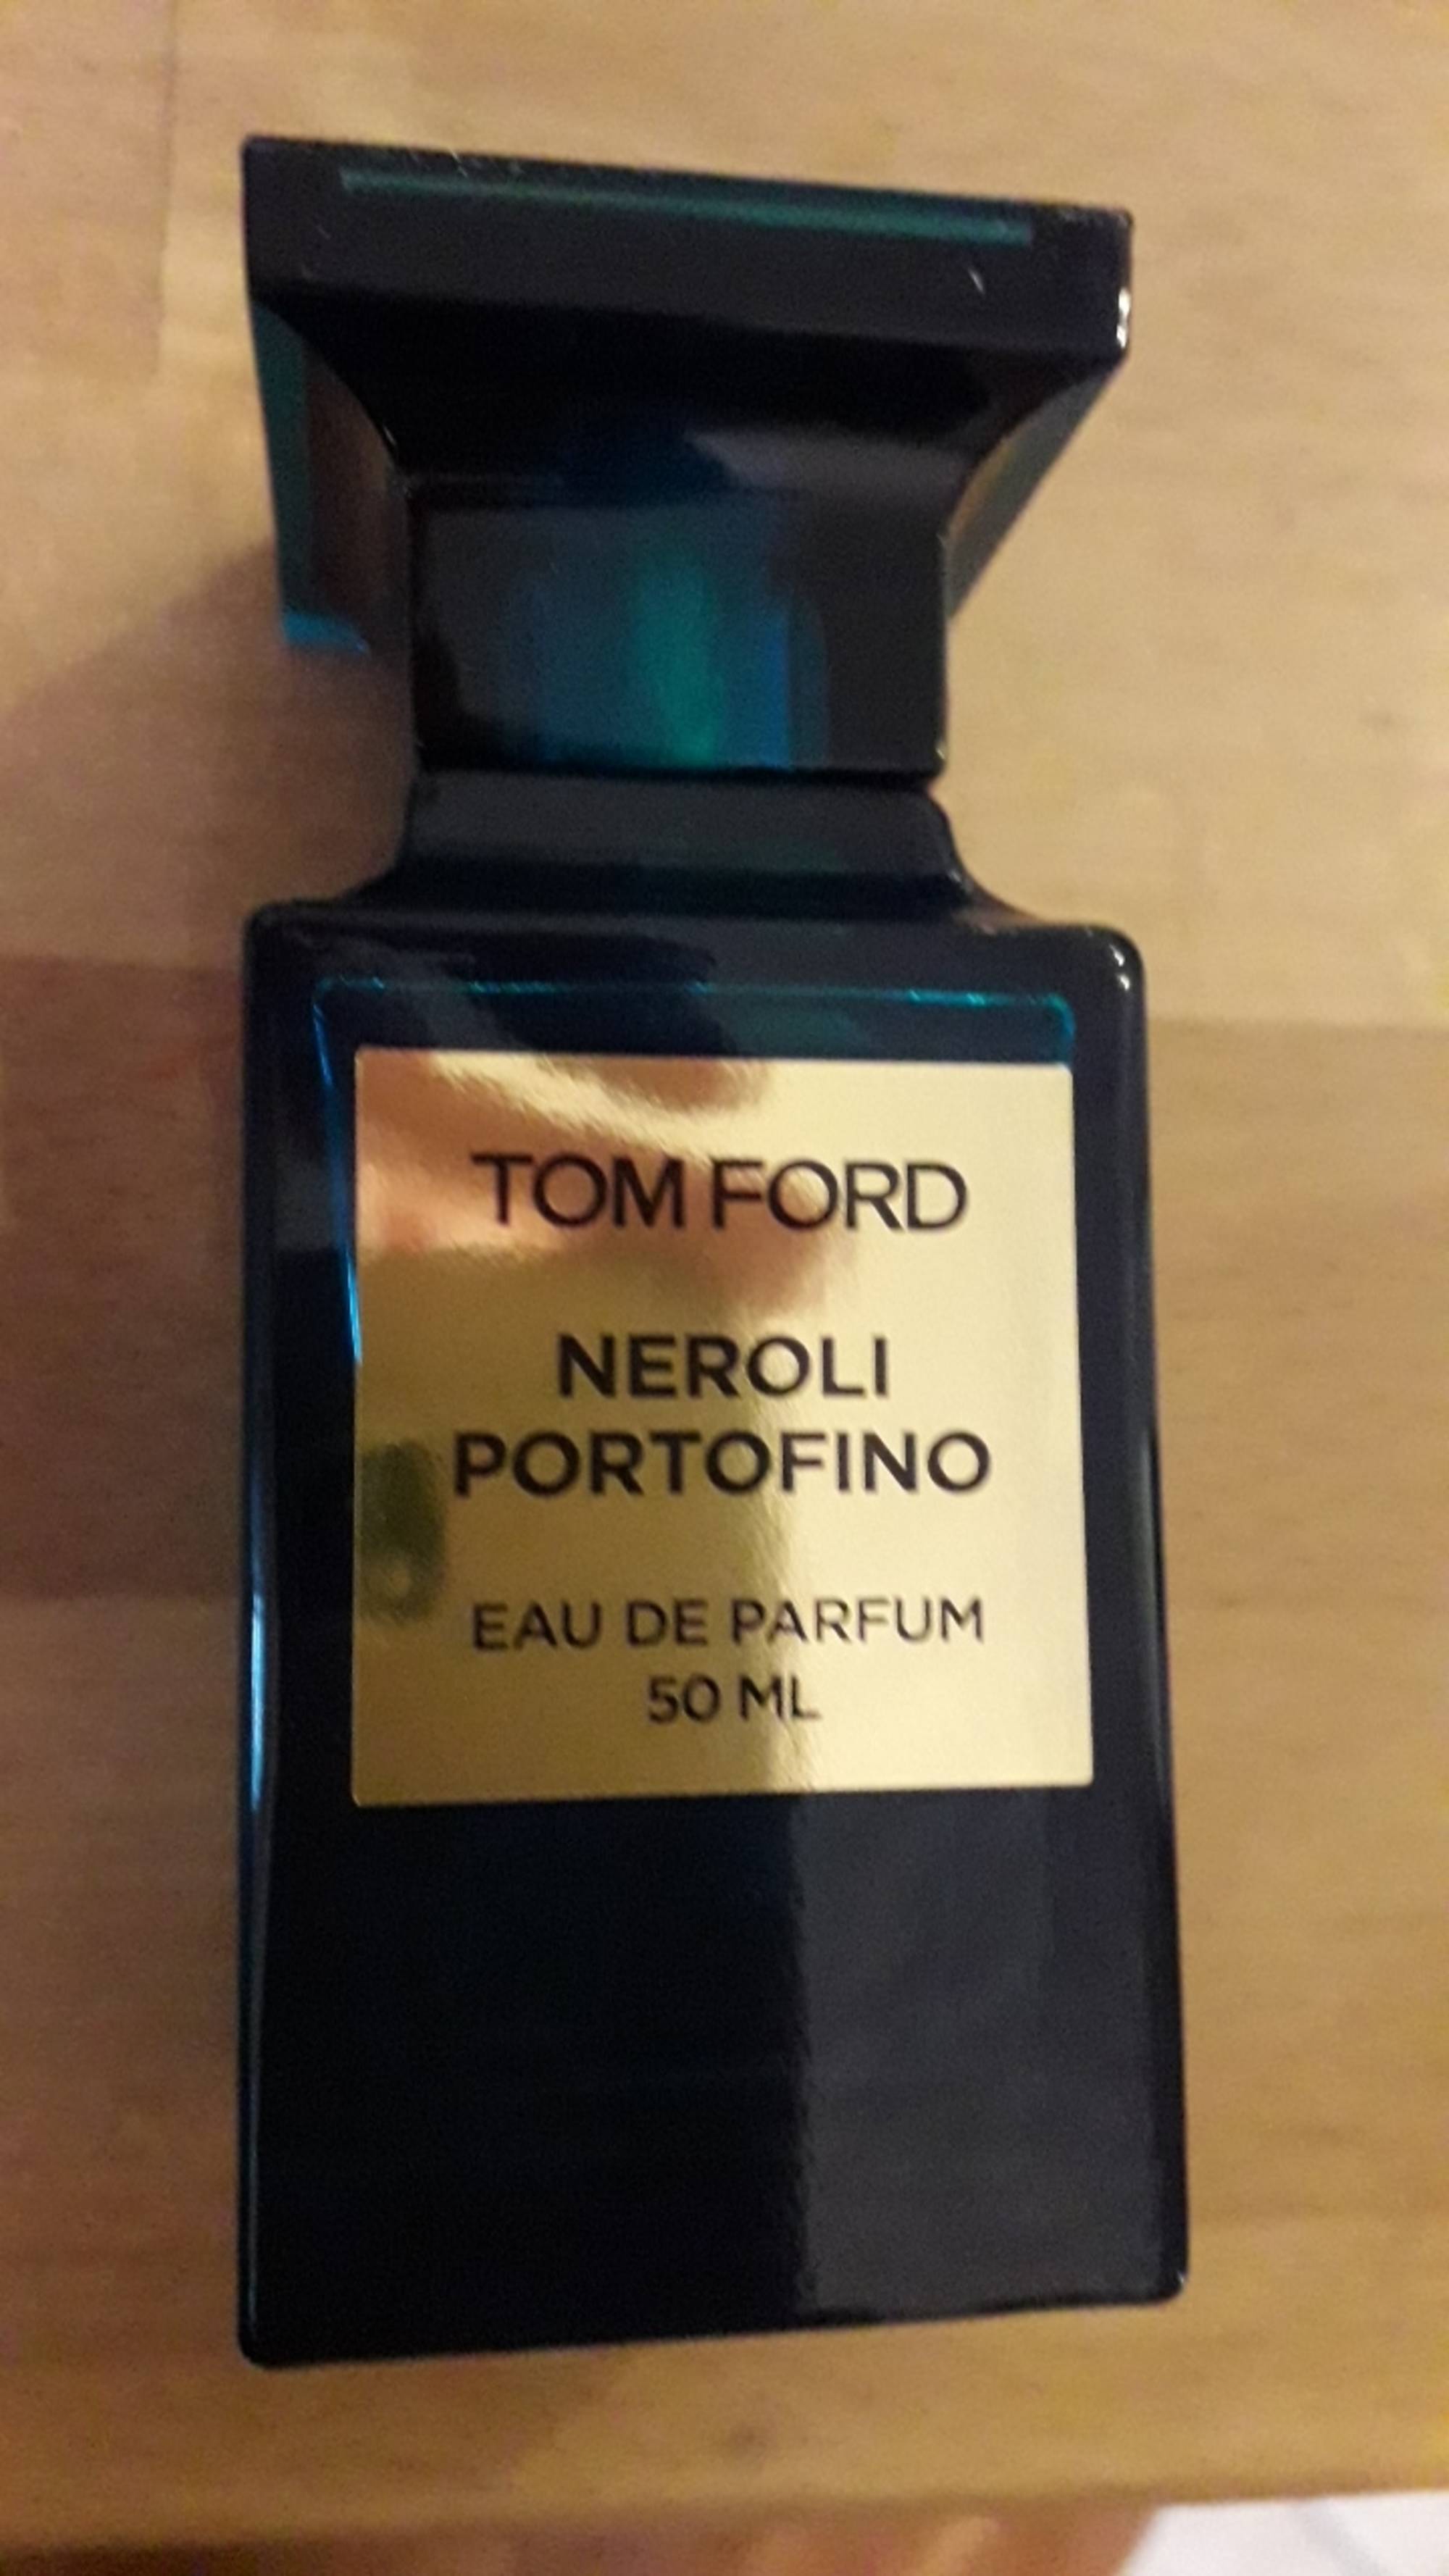 TOM FORD - Neroli portofino - Eau de parfum